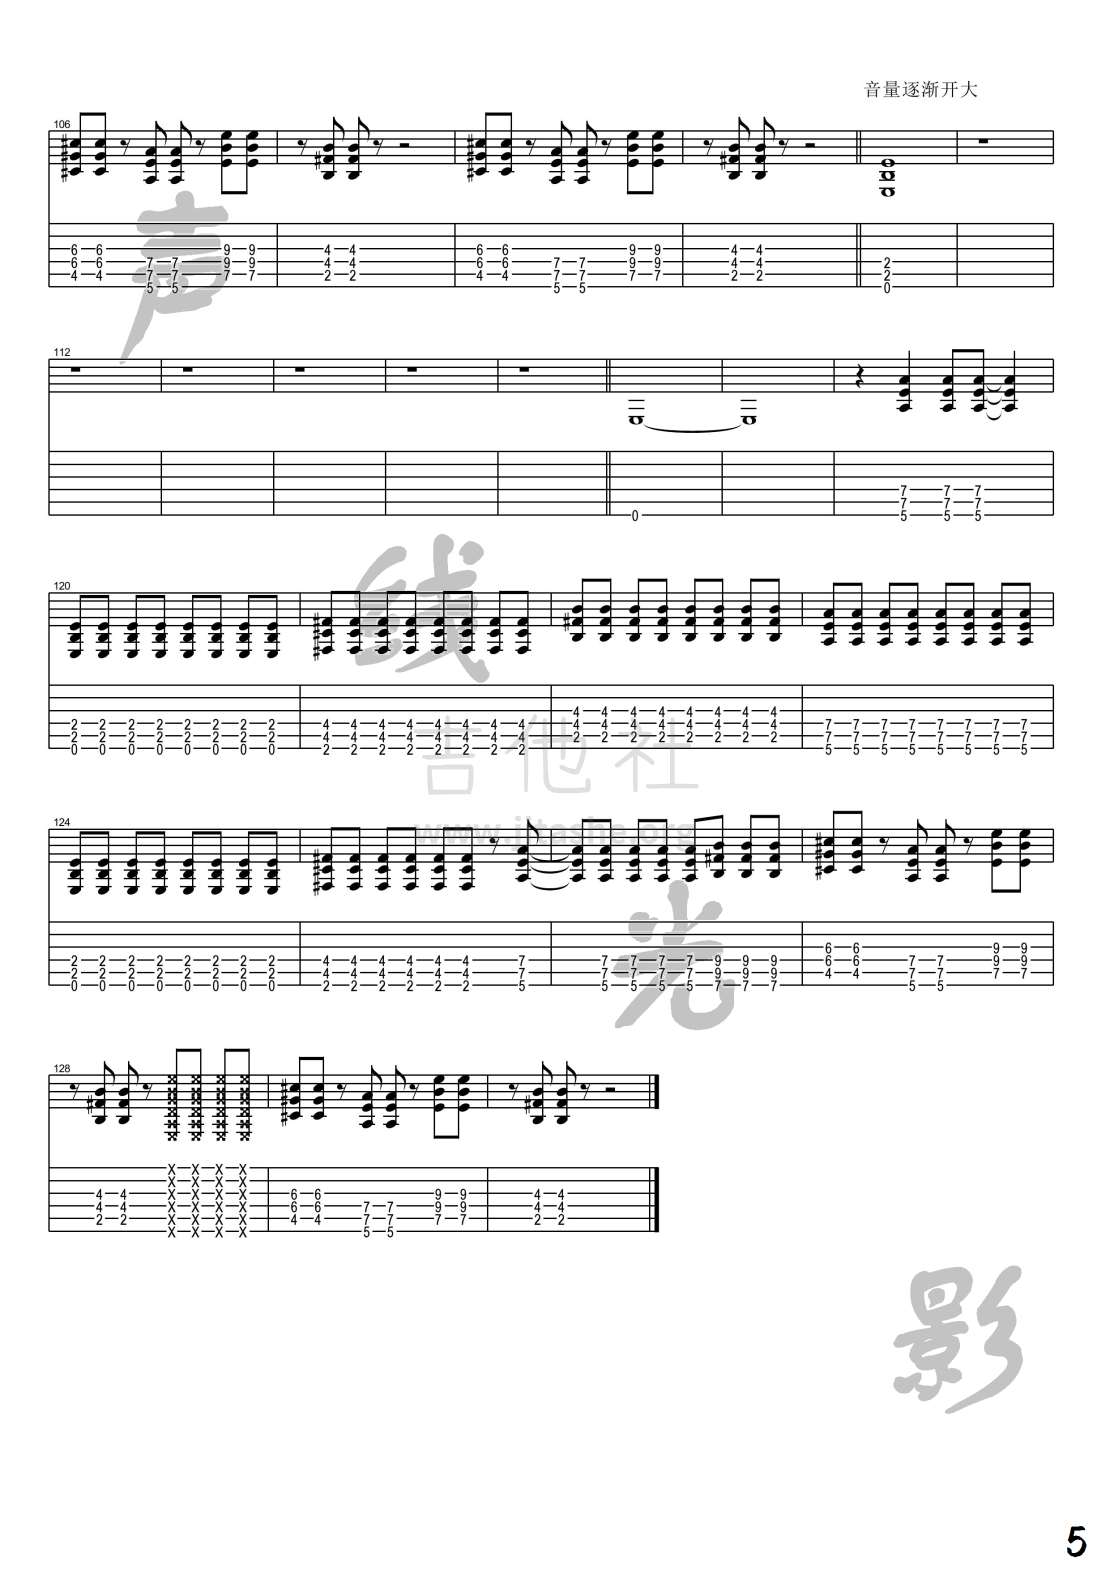 赛尔号(电吉他谱第四期)吉他谱(图片谱,电吉他,教学)_张杰(Jason Zhang)_赛尔号_5.png